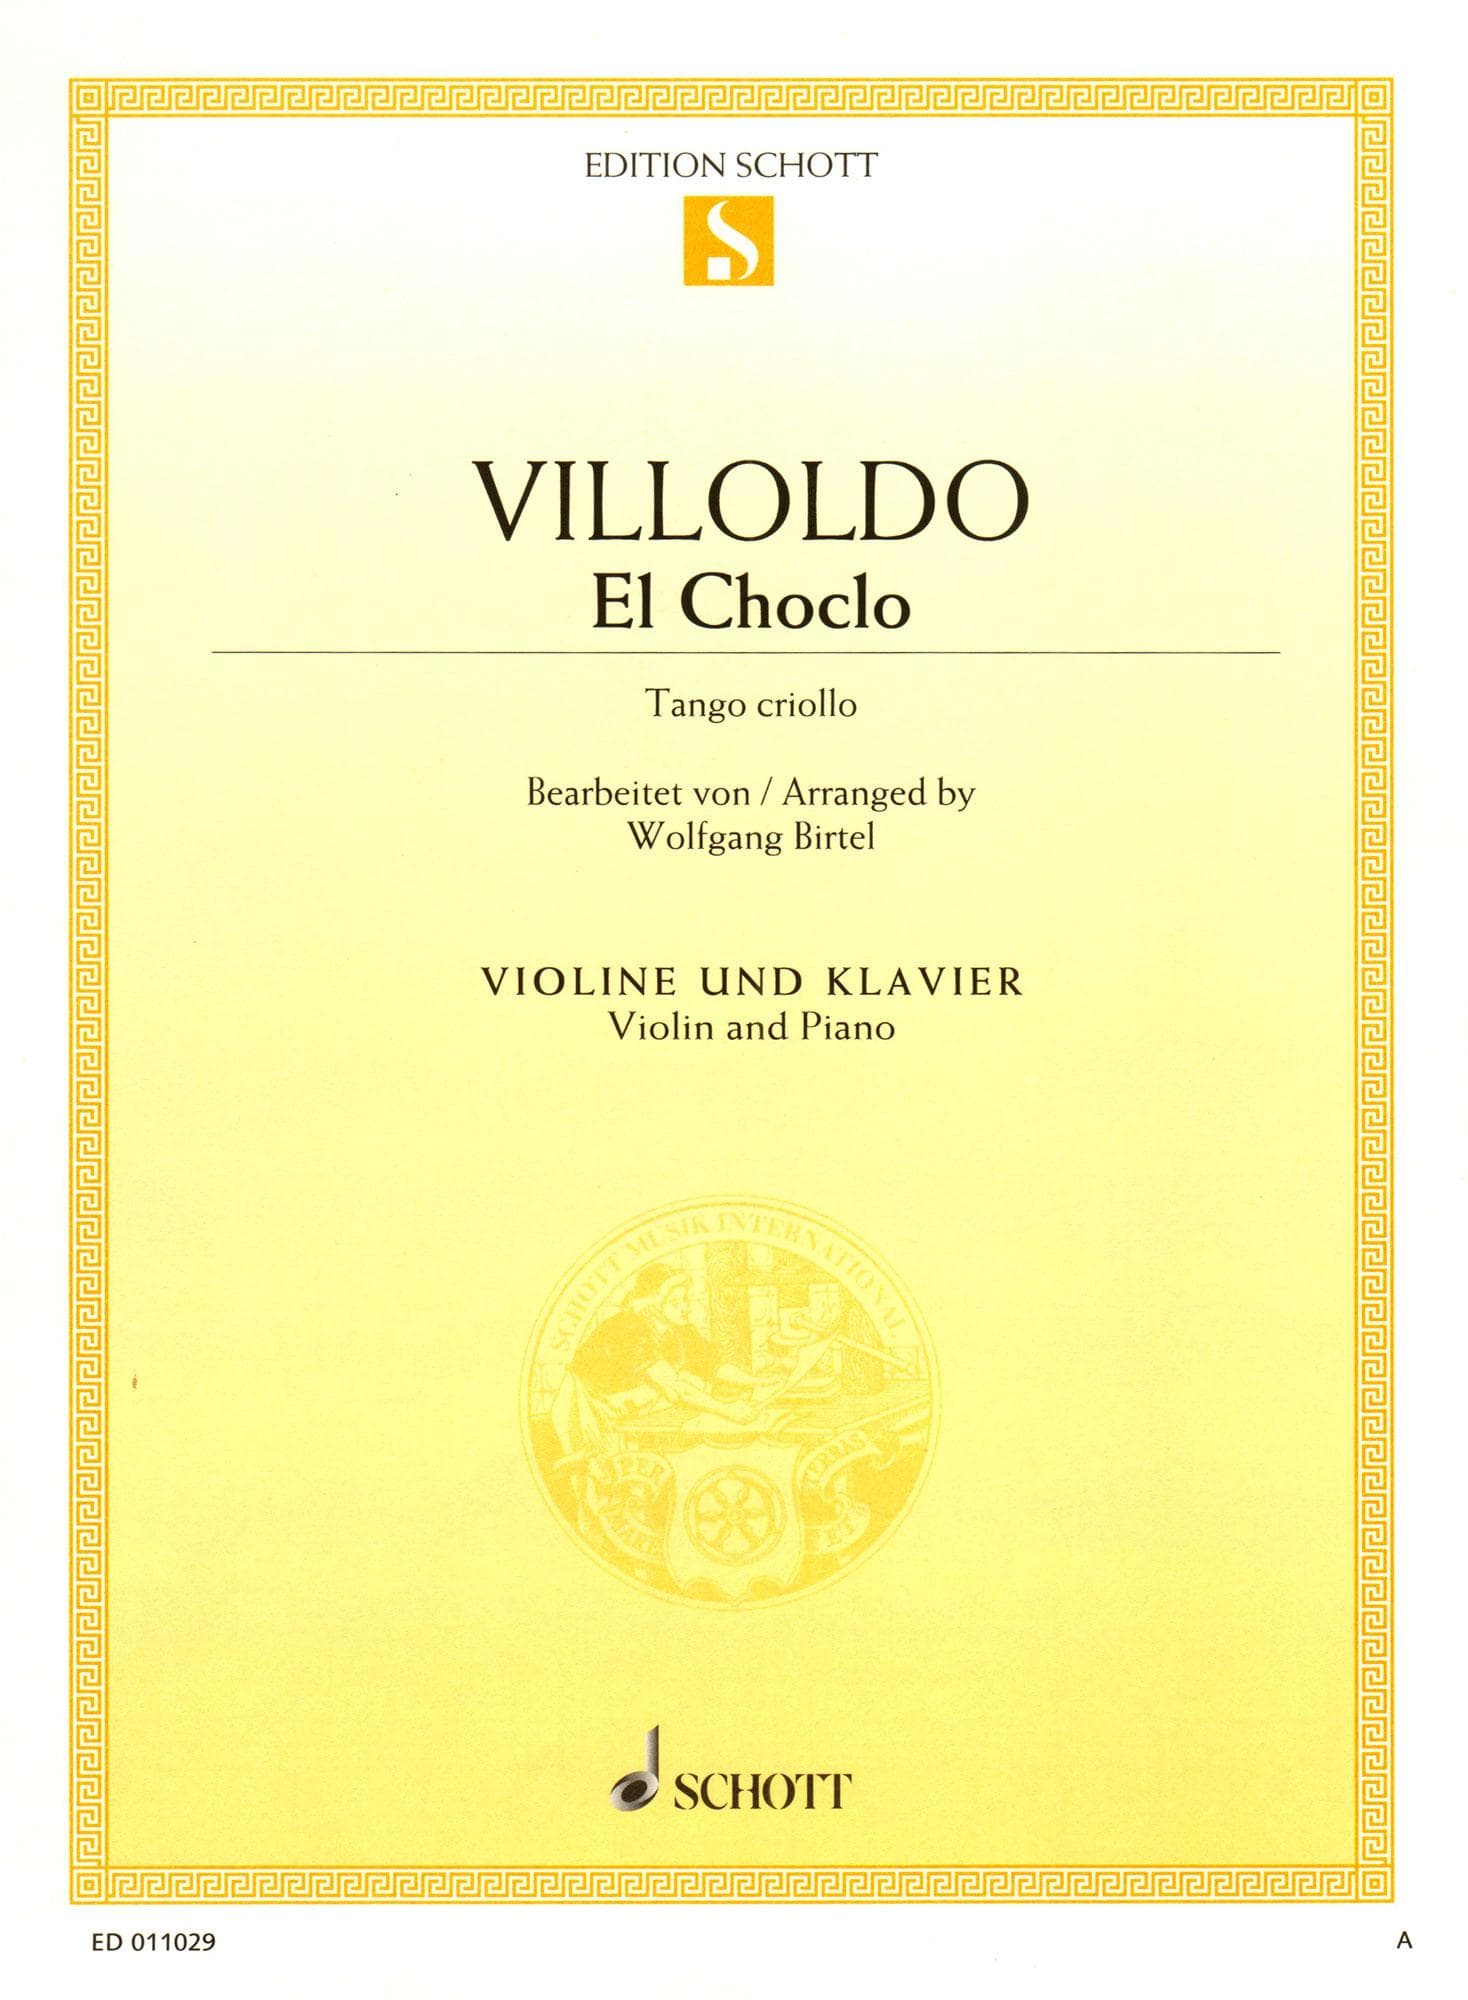 Villoldo, Angel - El Choclo (Tango Criollo) - for Violin and Piano - arranged by Woldgang Birtel - Schott